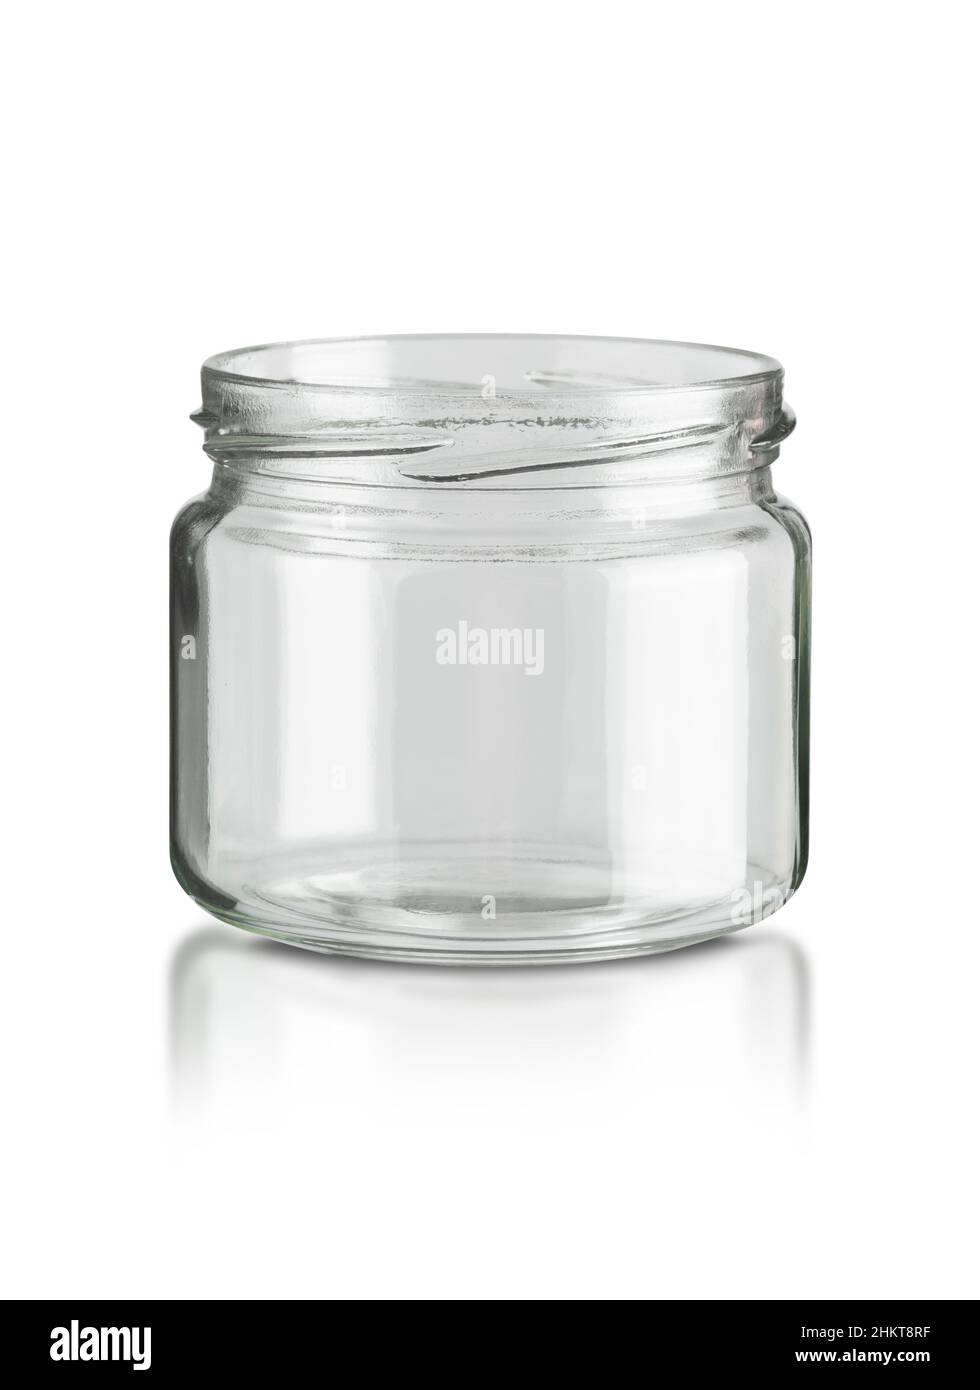 Recipiente in vetro da cucina utensil isolato su sfondo bianco con percorso di taglio Foto Stock